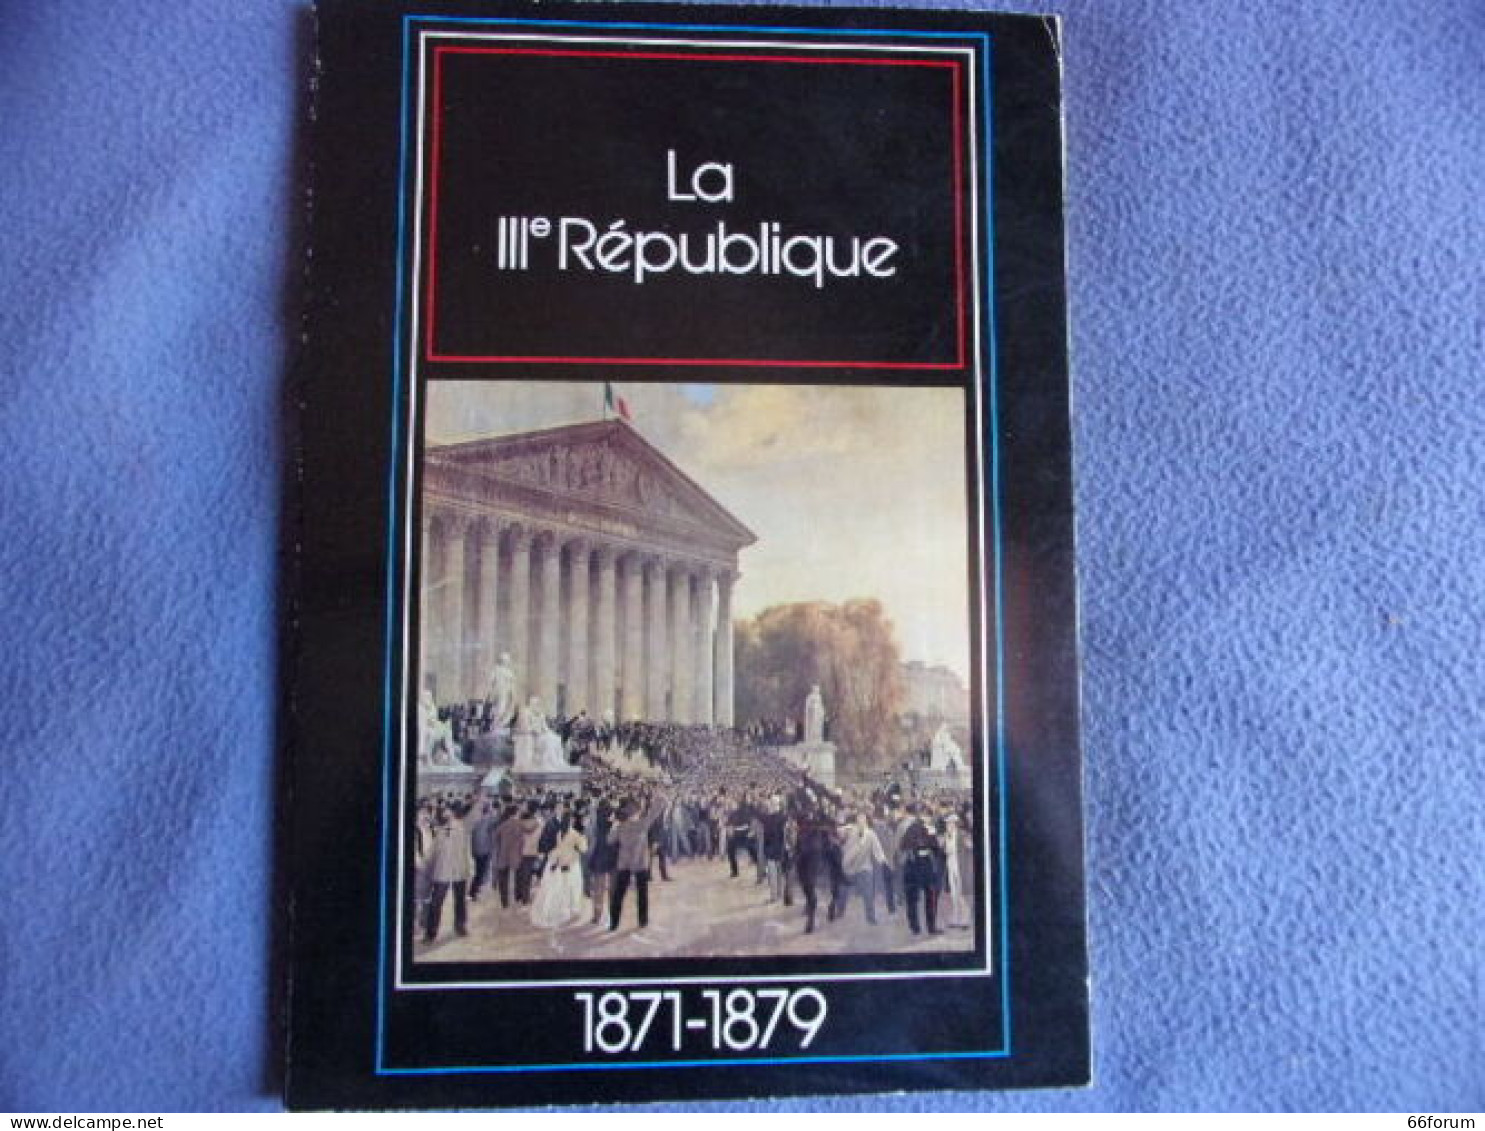 La III° République 1871-1879 - History